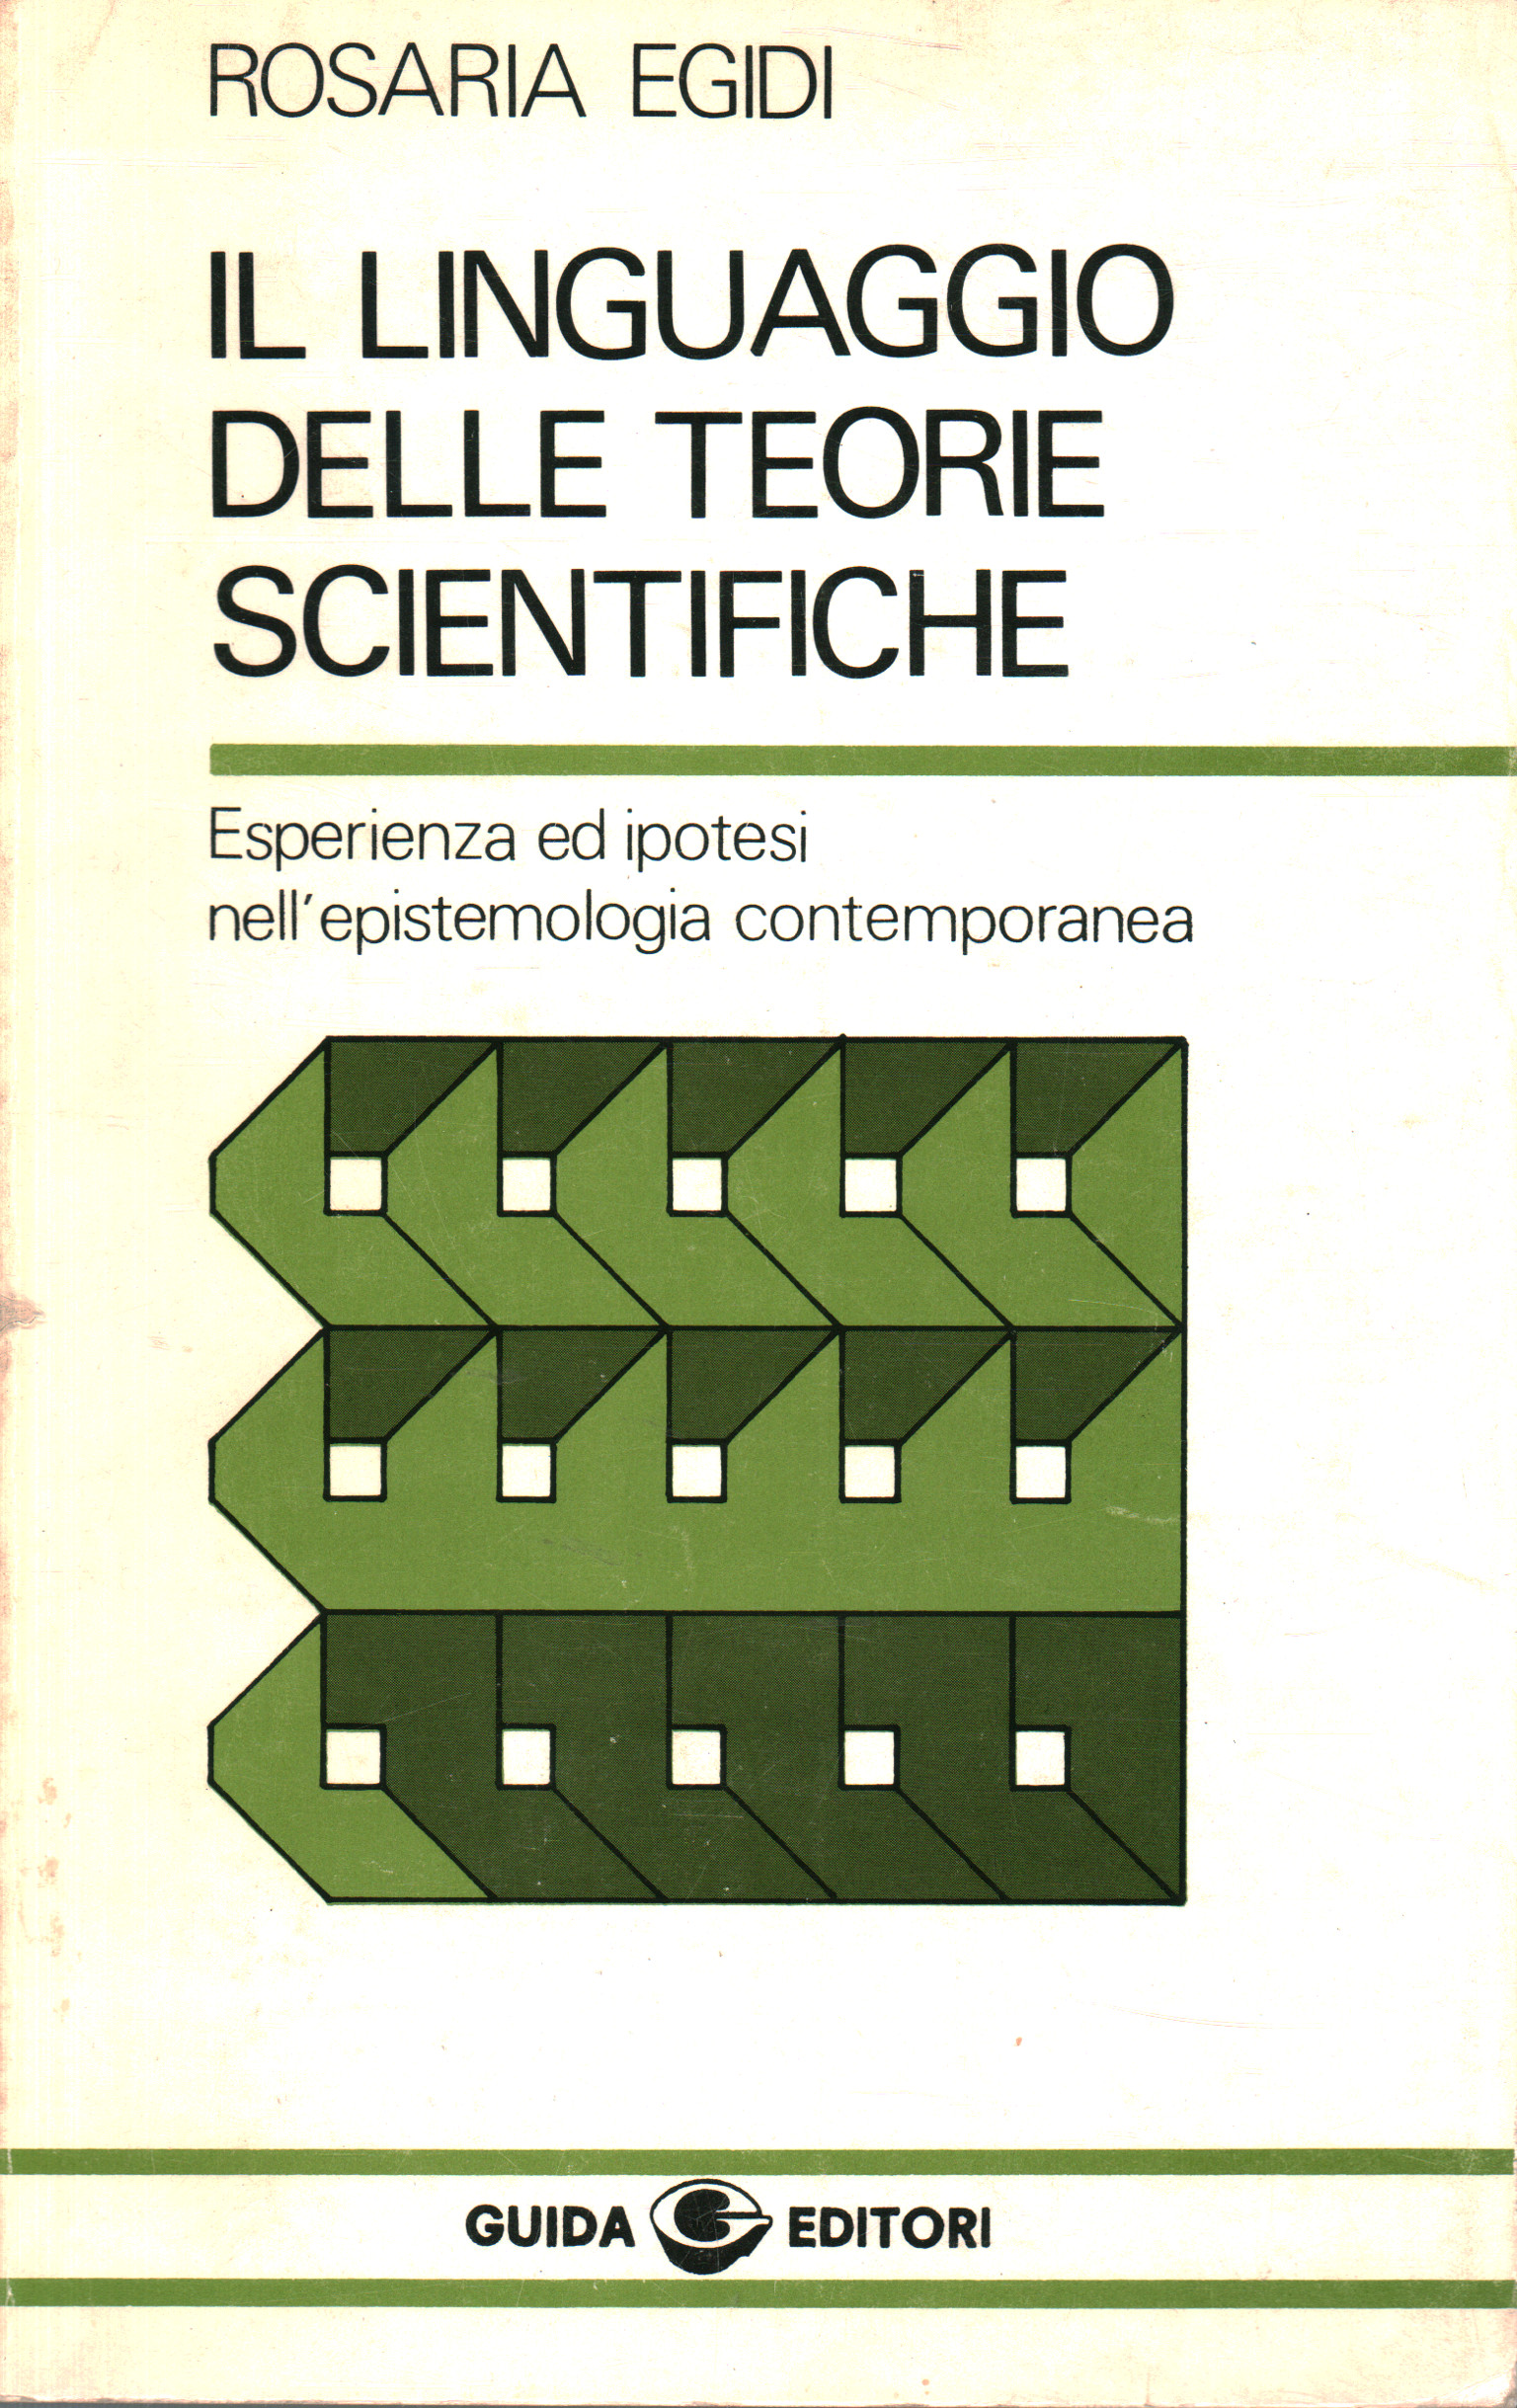 Il linguaggio delle teorie scientifiche, Rosaria Egidi